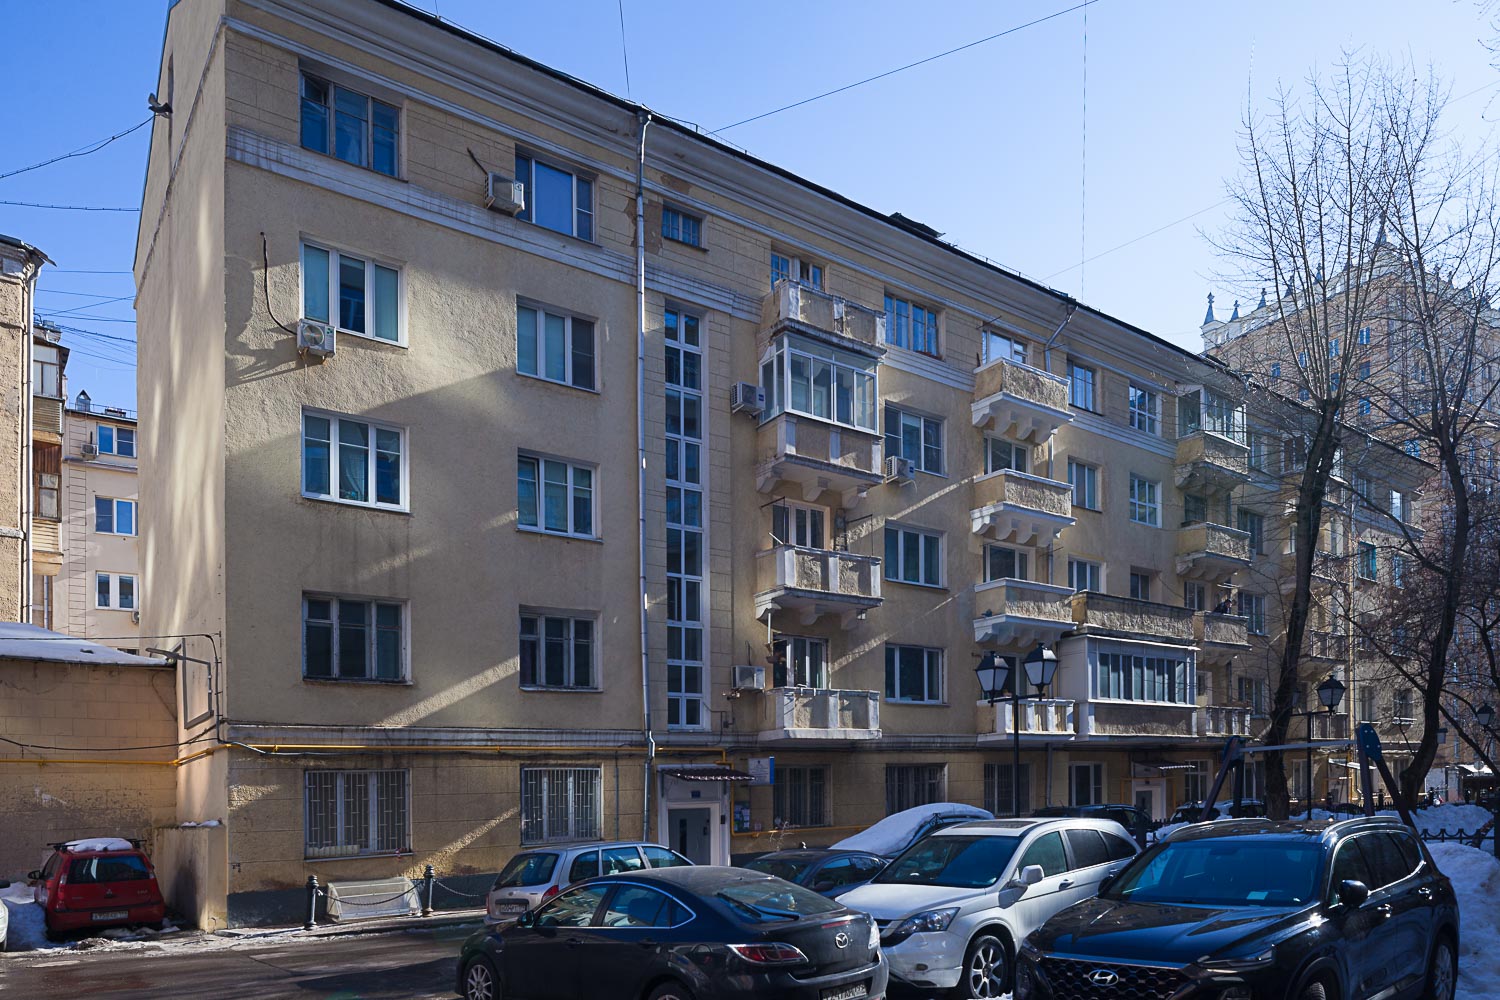 Продам квартиру в Москве по адресу Капельский переулок, 13, площадь 80 квм Недвижимость Москва (Россия)  80 кв